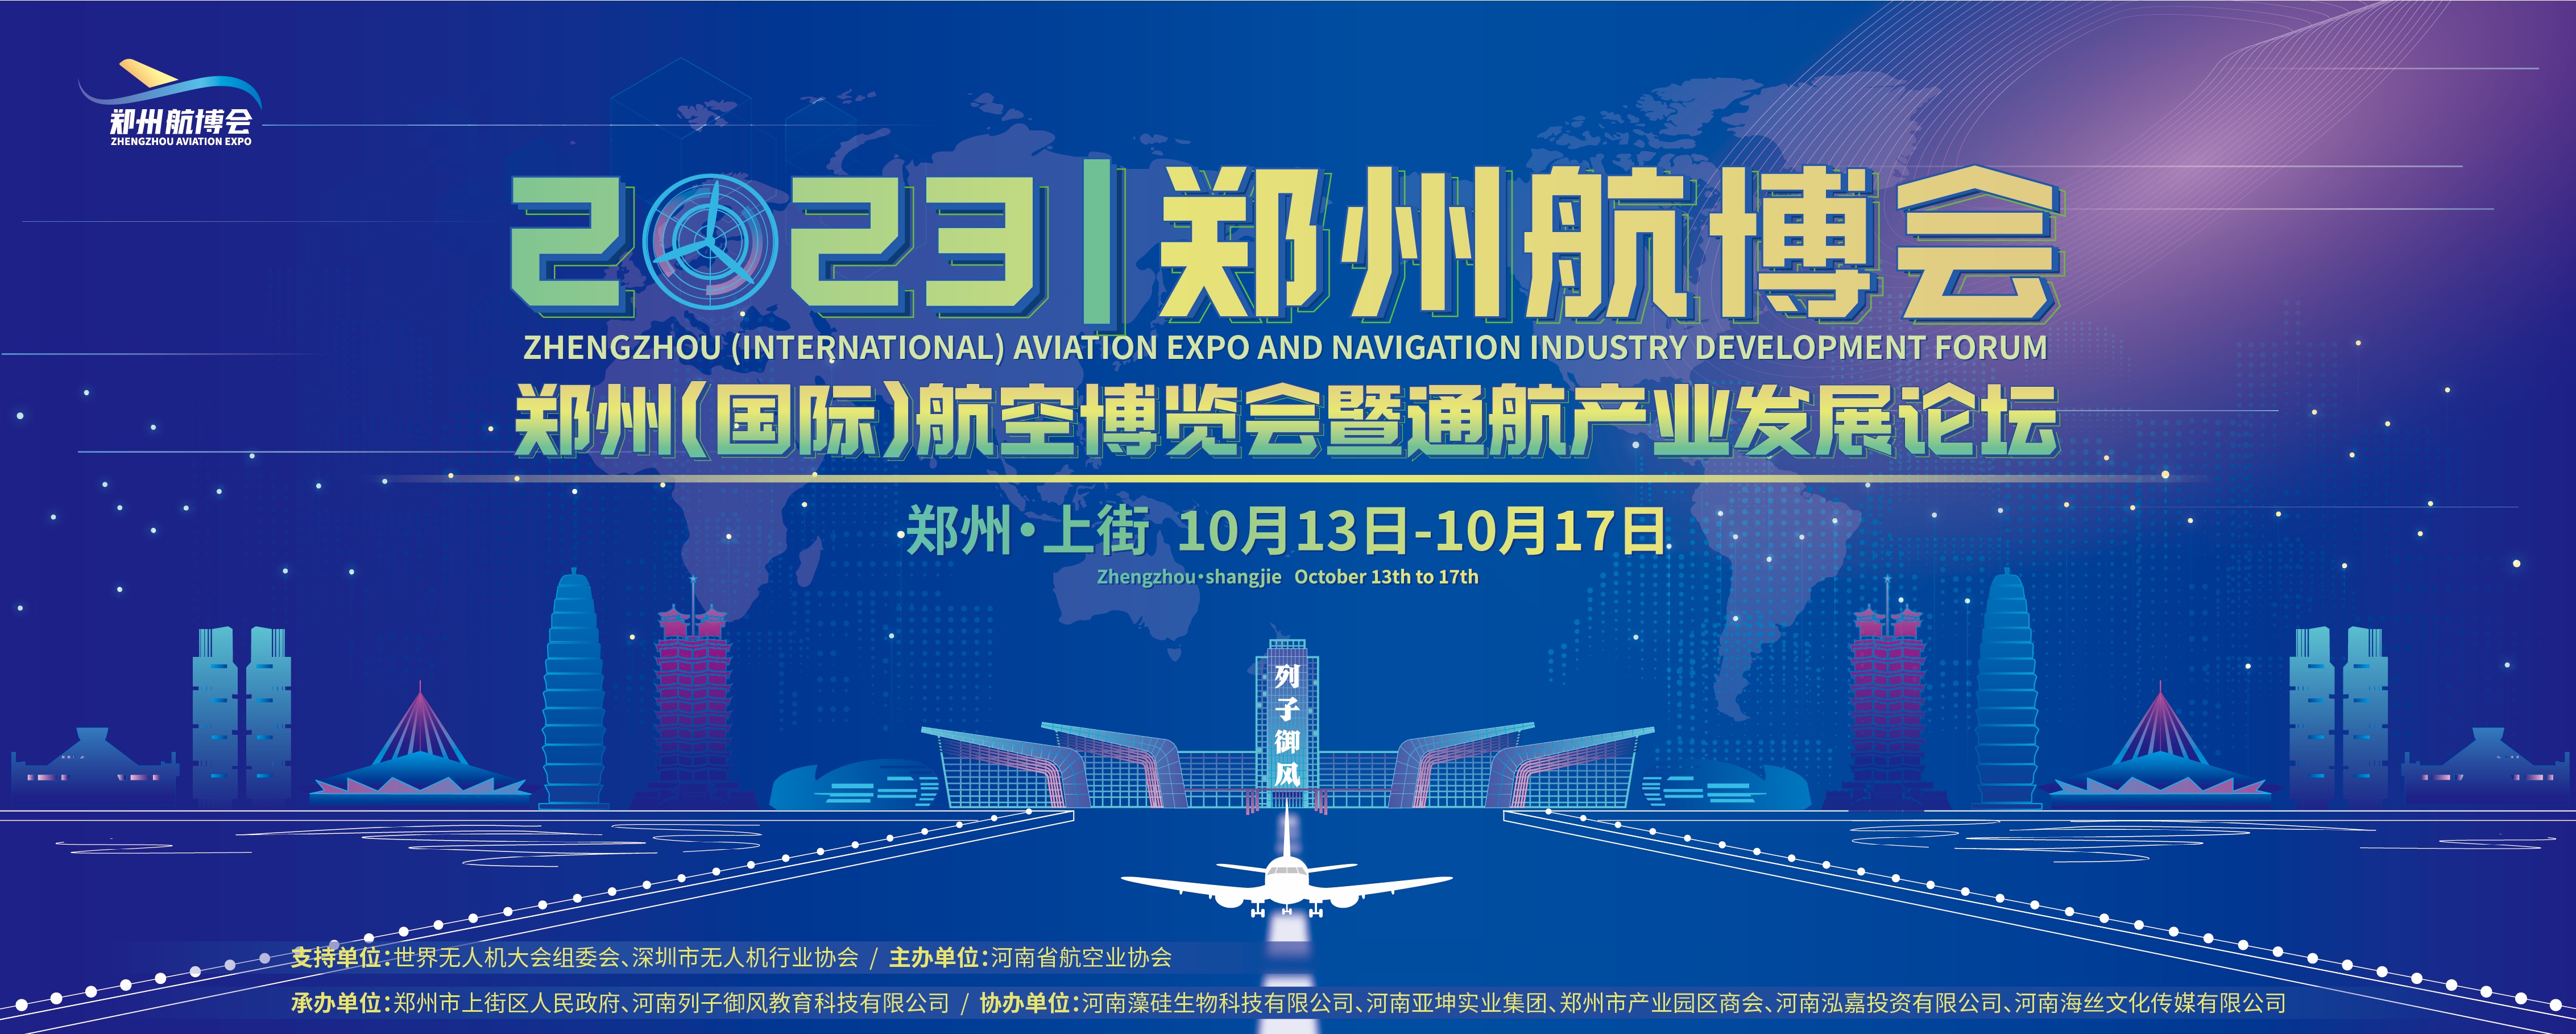 2023郑州（国际）航空博览会暨通航产业发展论坛将于10月13日开幕